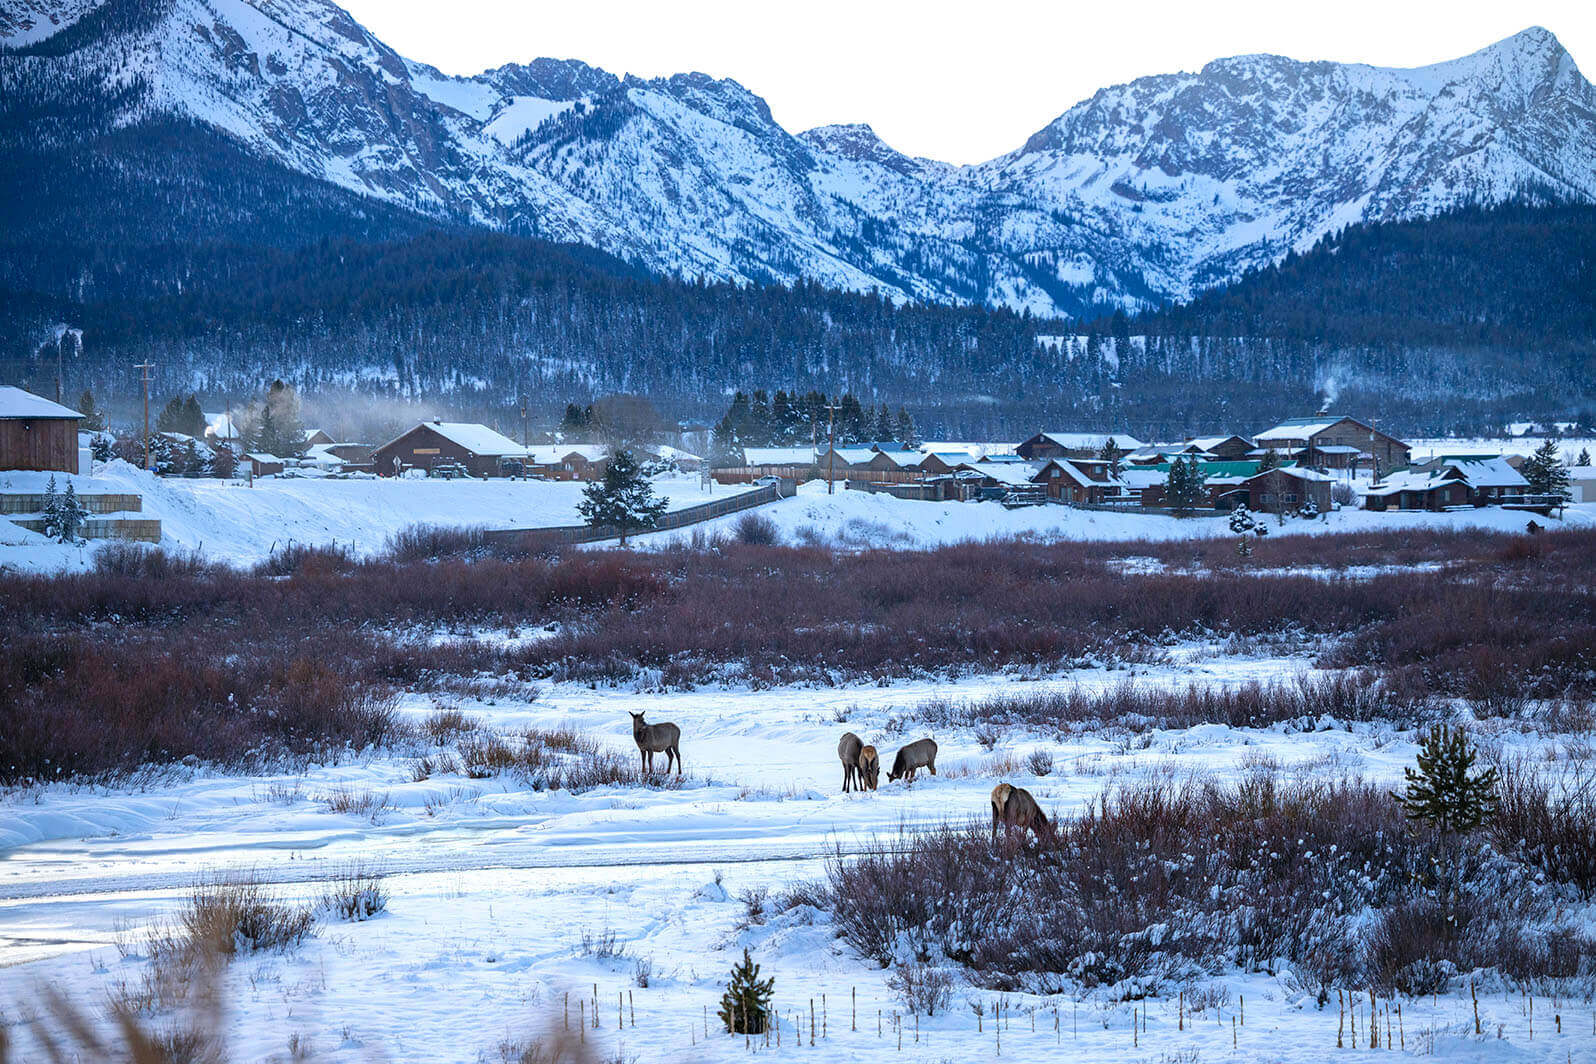 A small herd of Rocky mountain elk graze in a snowy valley near Stanley.